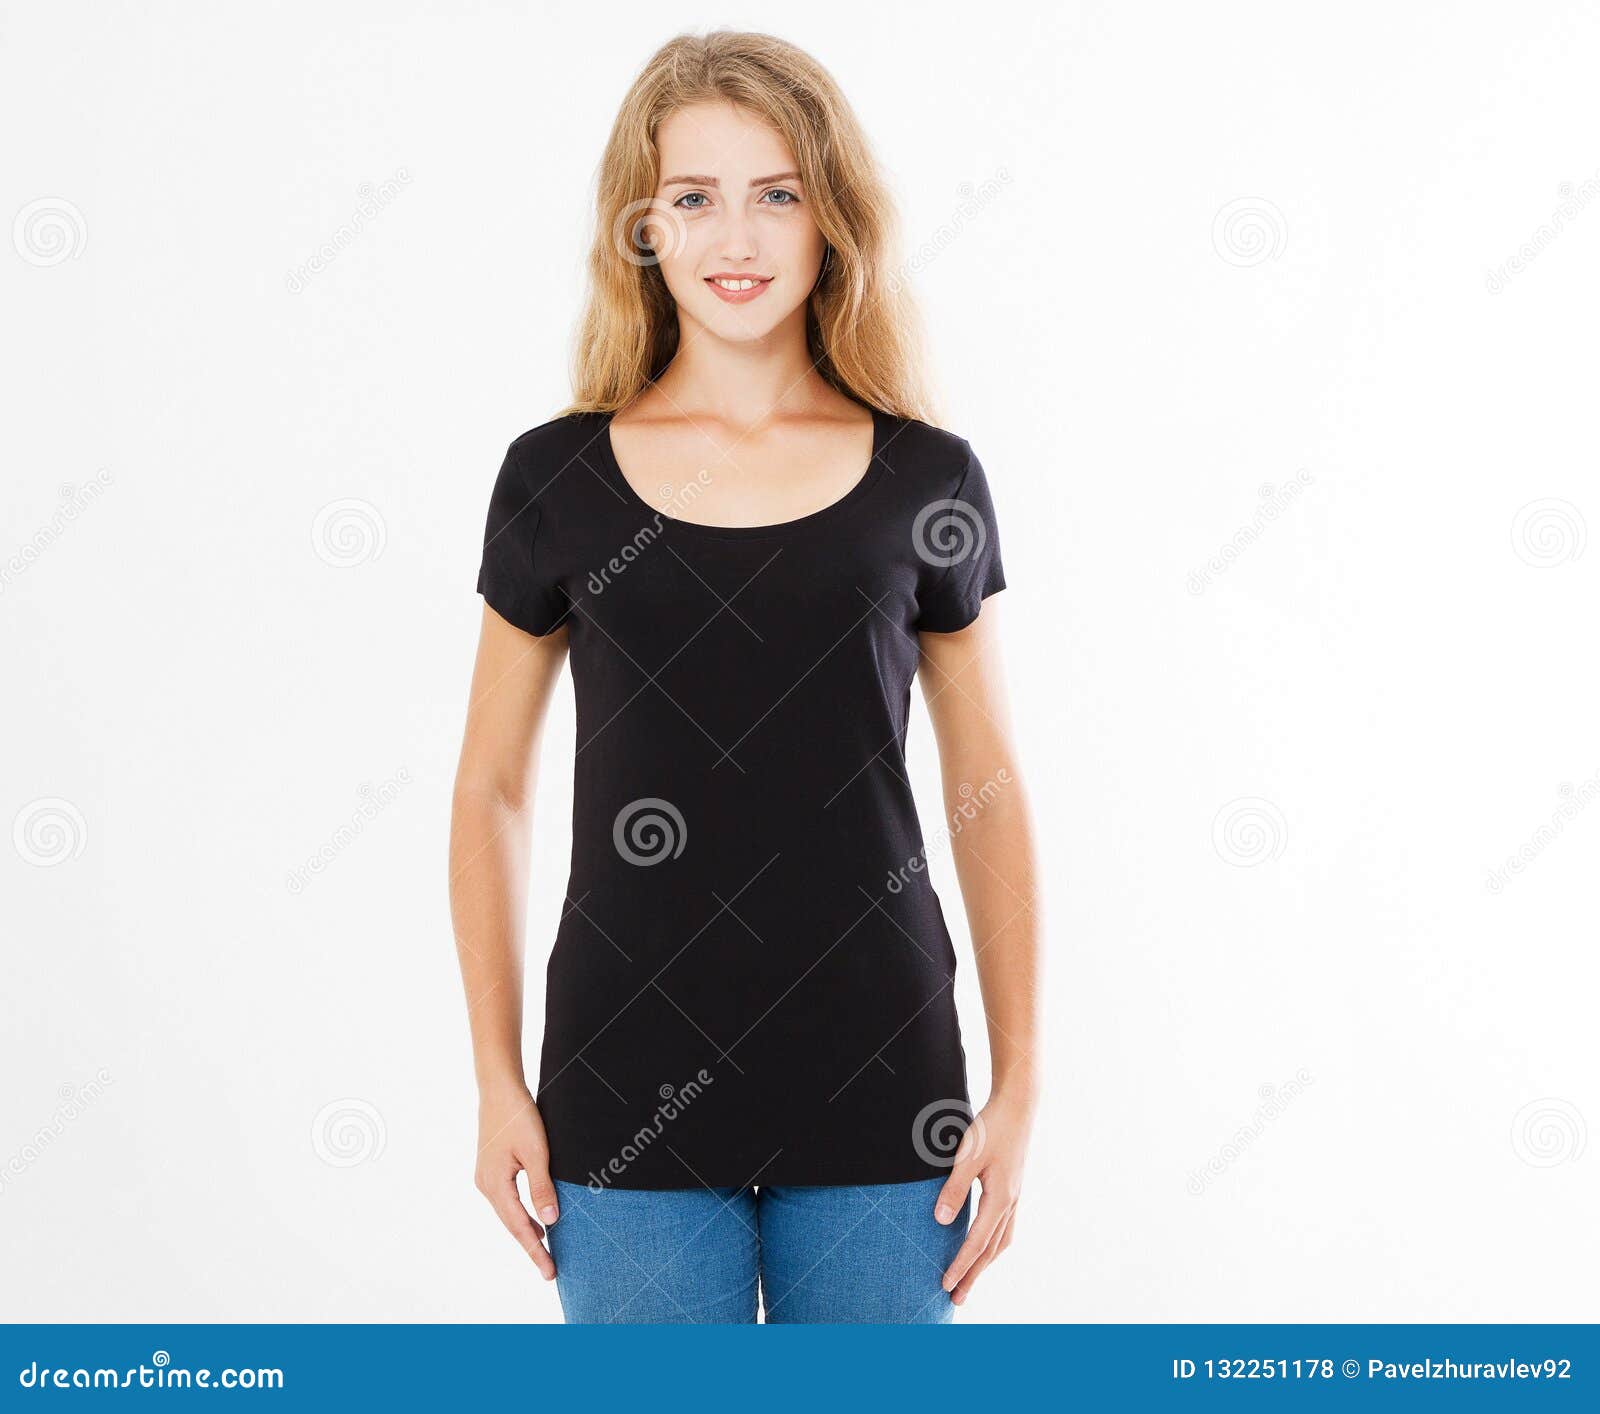 Camiseta Negra, Mujer De La Camiseta En La Camiseta Aislada En El Fondo  Blanco, Falso Para Arriba Foto de archivo - Imagen de frente, ocasional:  132251178